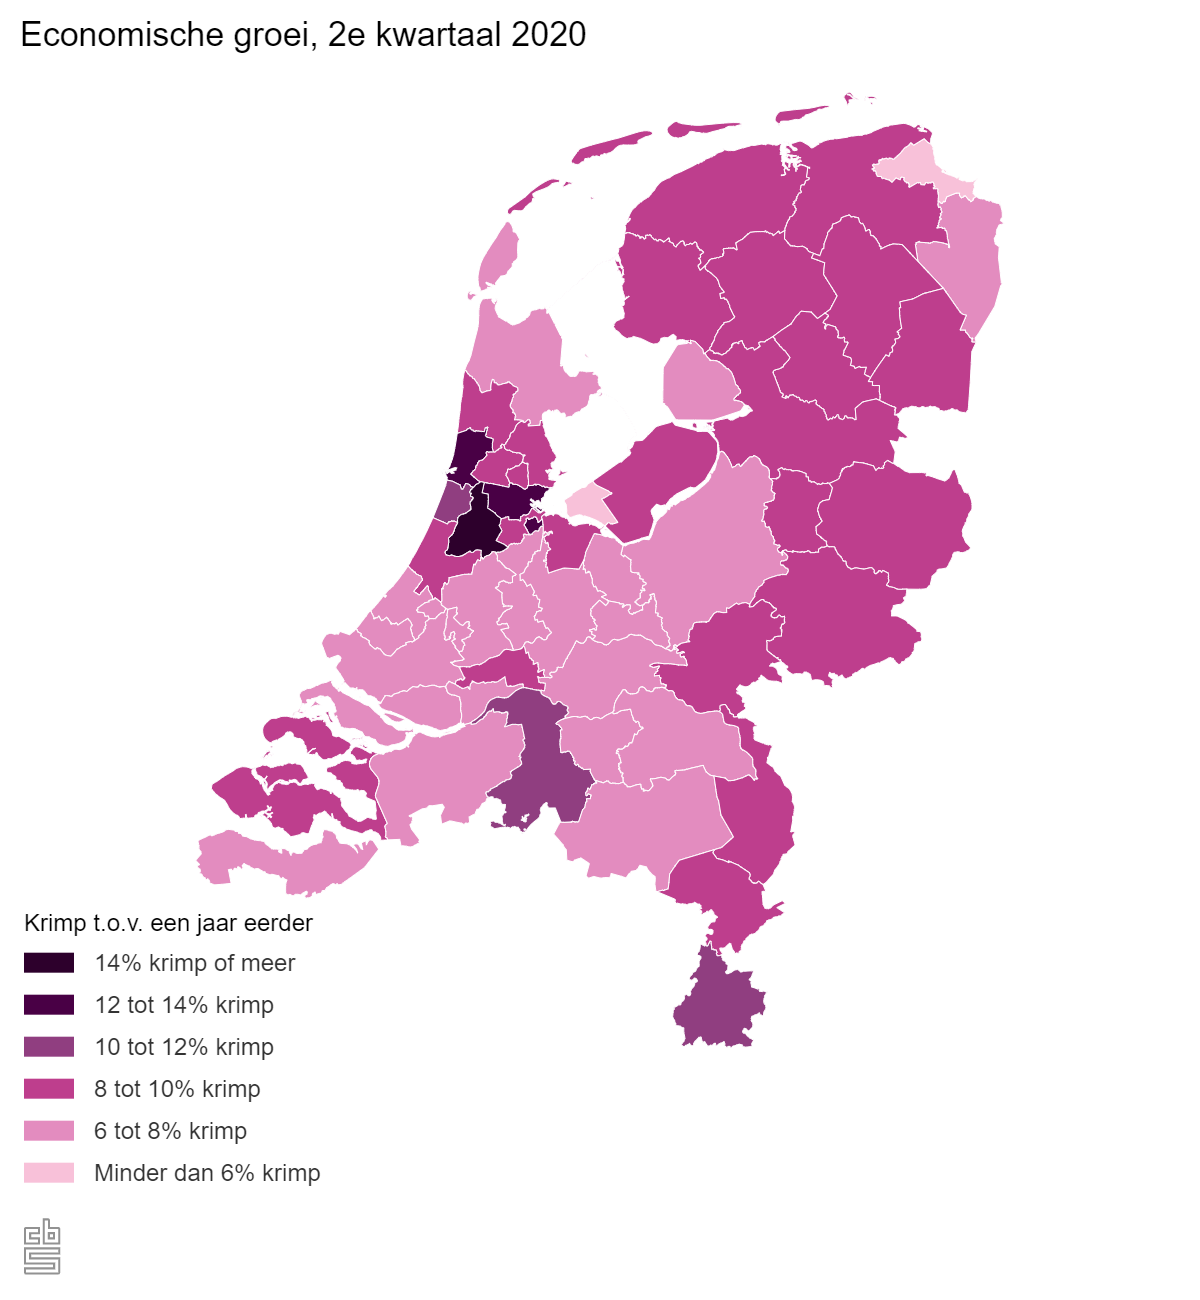 De economische groei, het tweede kwartaal 2020. In heel Nederland is sprake geweest van krimp t.o.v. een jaar eerder. De metropoolregio Amsterdam, waaronder de regio Schiphol, is het hardste geraakt met een krimp van 14% of meer. Verder is van het noorden langs de grens met Duitsland naar het zuiden lopend tot aan het Limburg een sterkere krimp dan in midden en west Nederland te zien.